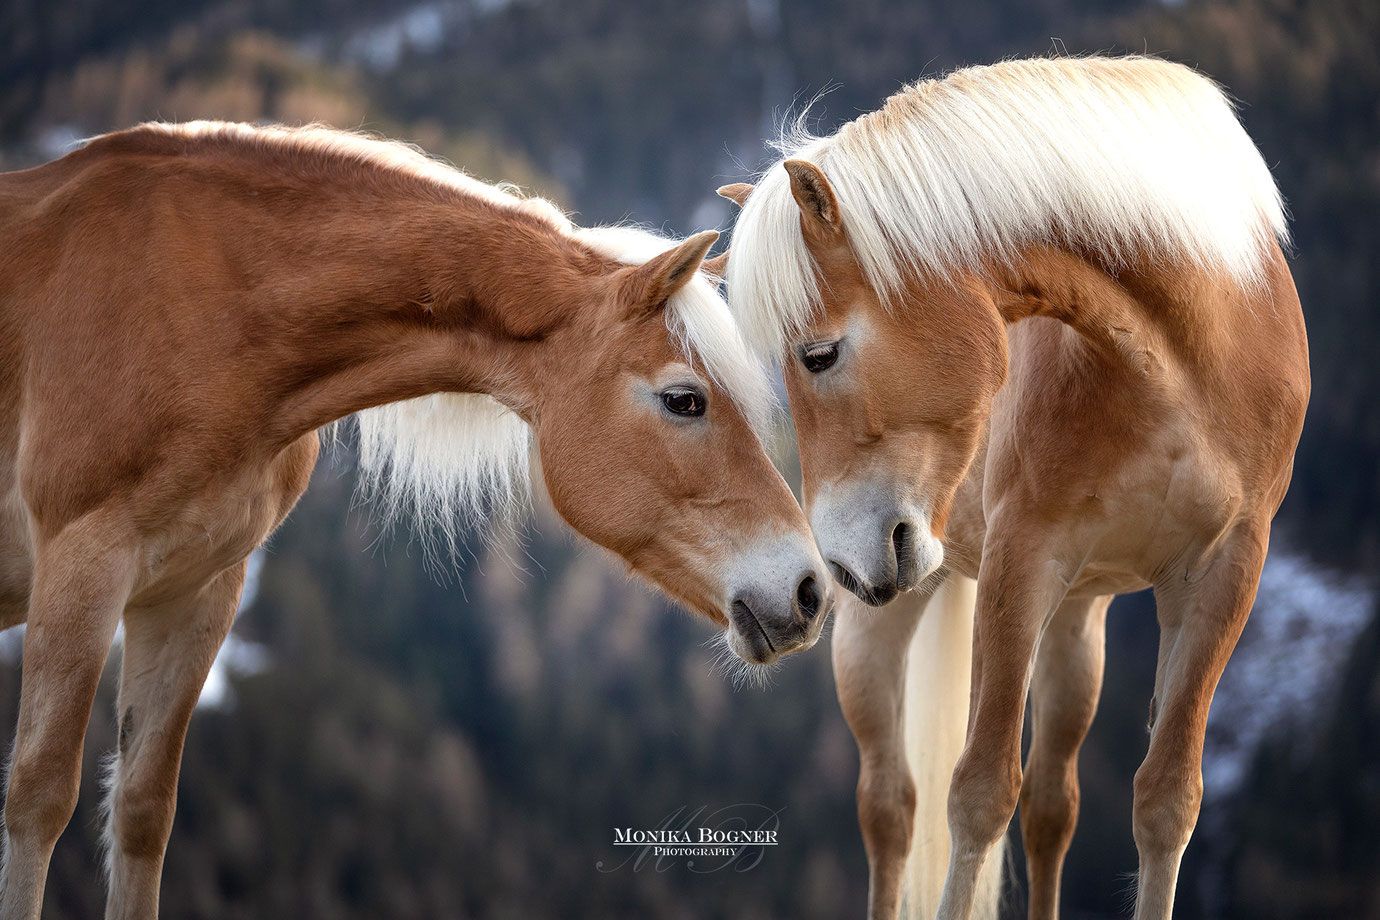  Pferde Im Schnee Hintergrundbild 1380x920. Pferde in der Natur Bogner Photography